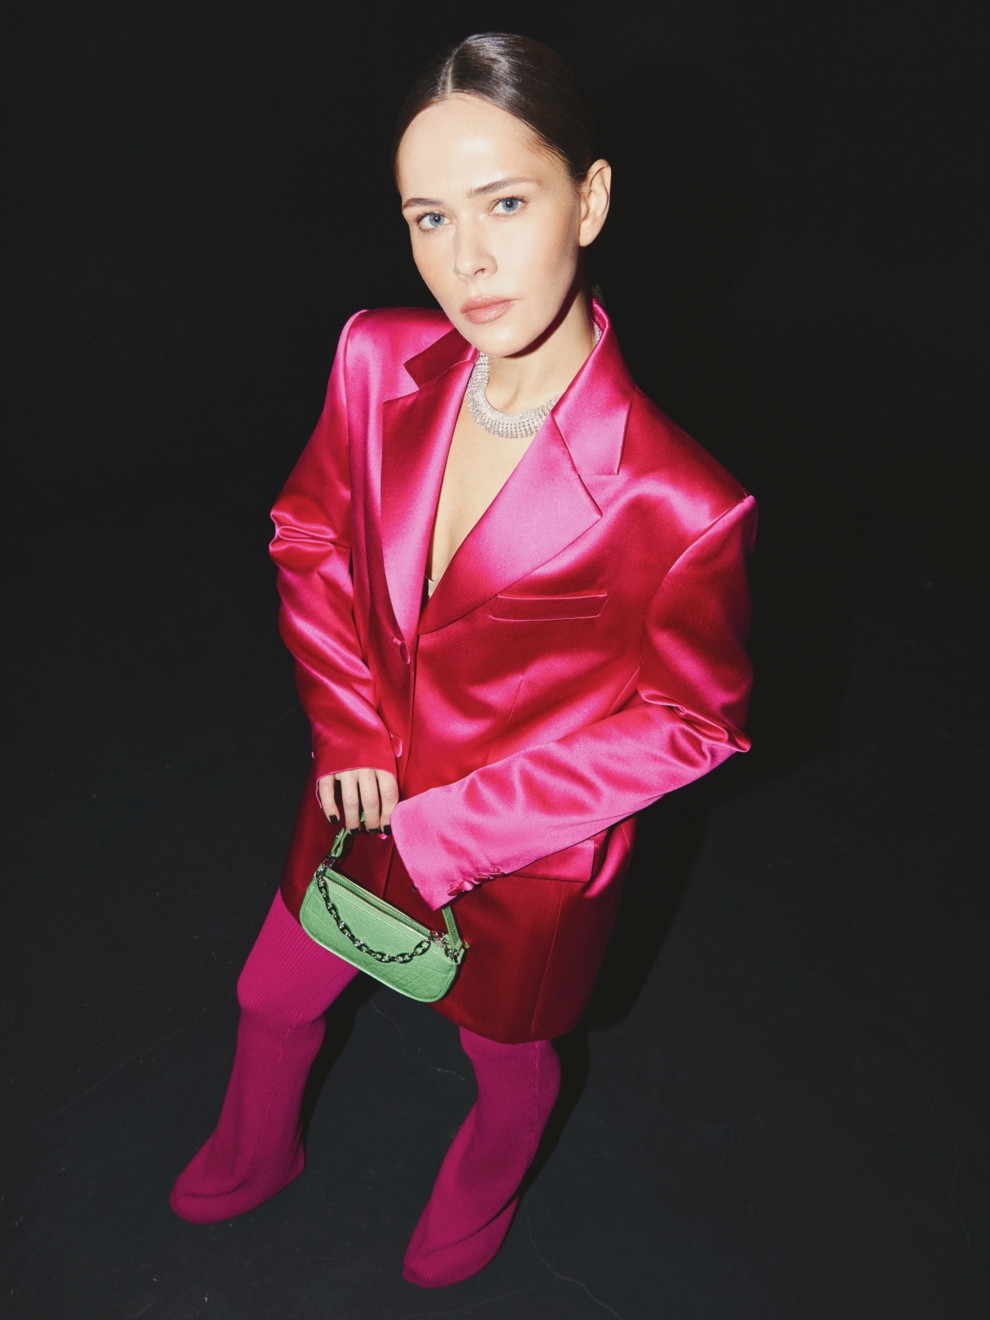 В соблазнительных корсетах и неоновых колготках: Юлия Санина снялась для Vogue (ФОТО) - фото №1